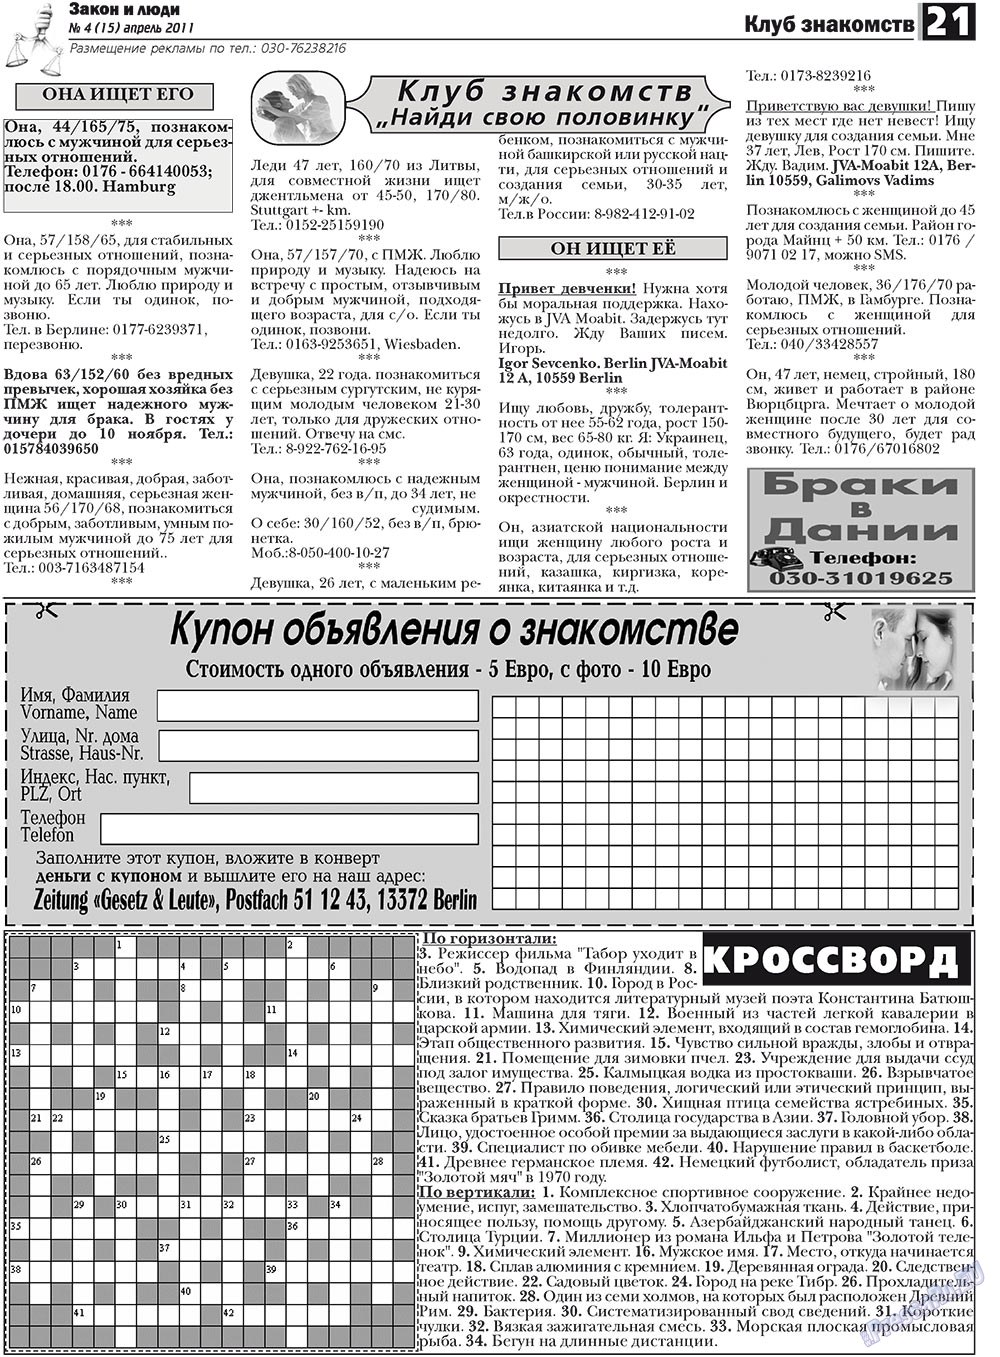 Закон и люди, газета. 2011 №4 стр.21